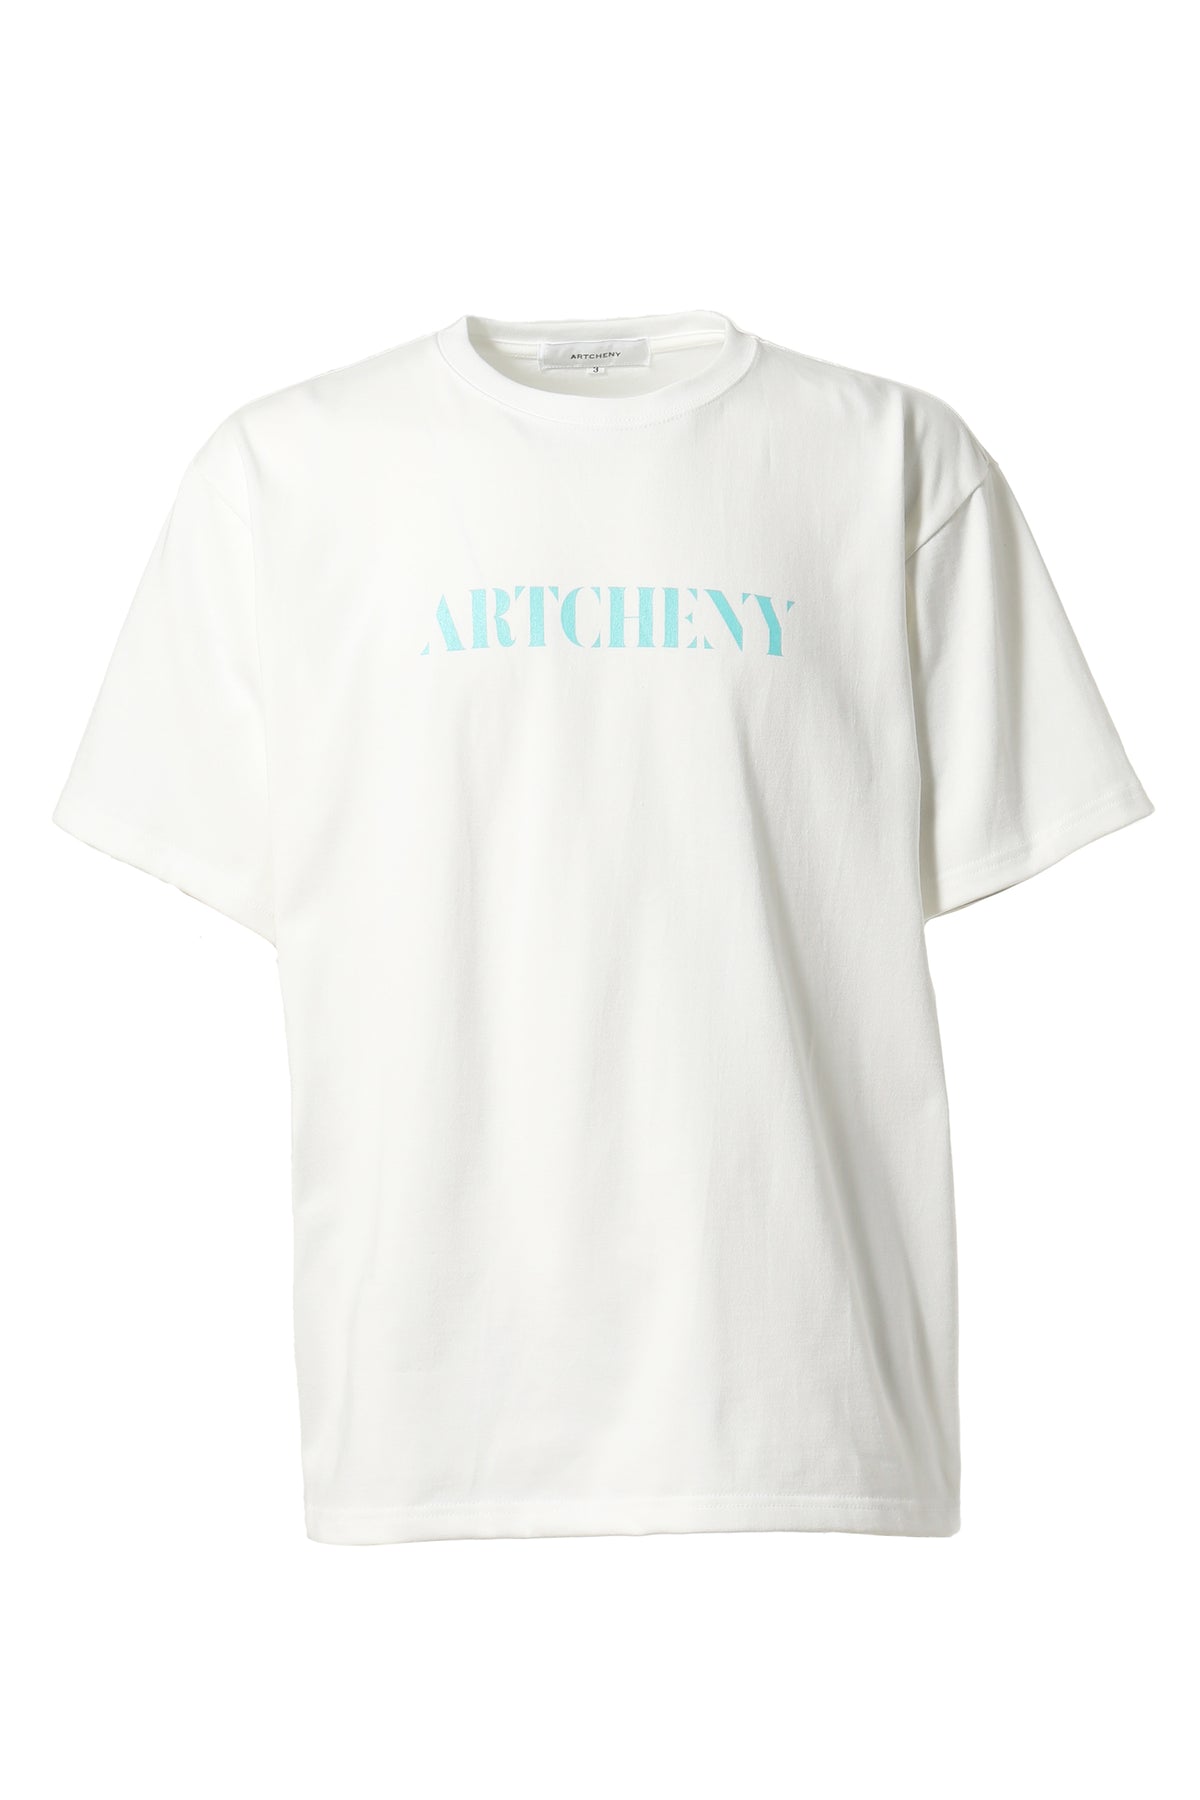 ARTCHENY TIFFARTCHENY T-SHIRTS / WHT